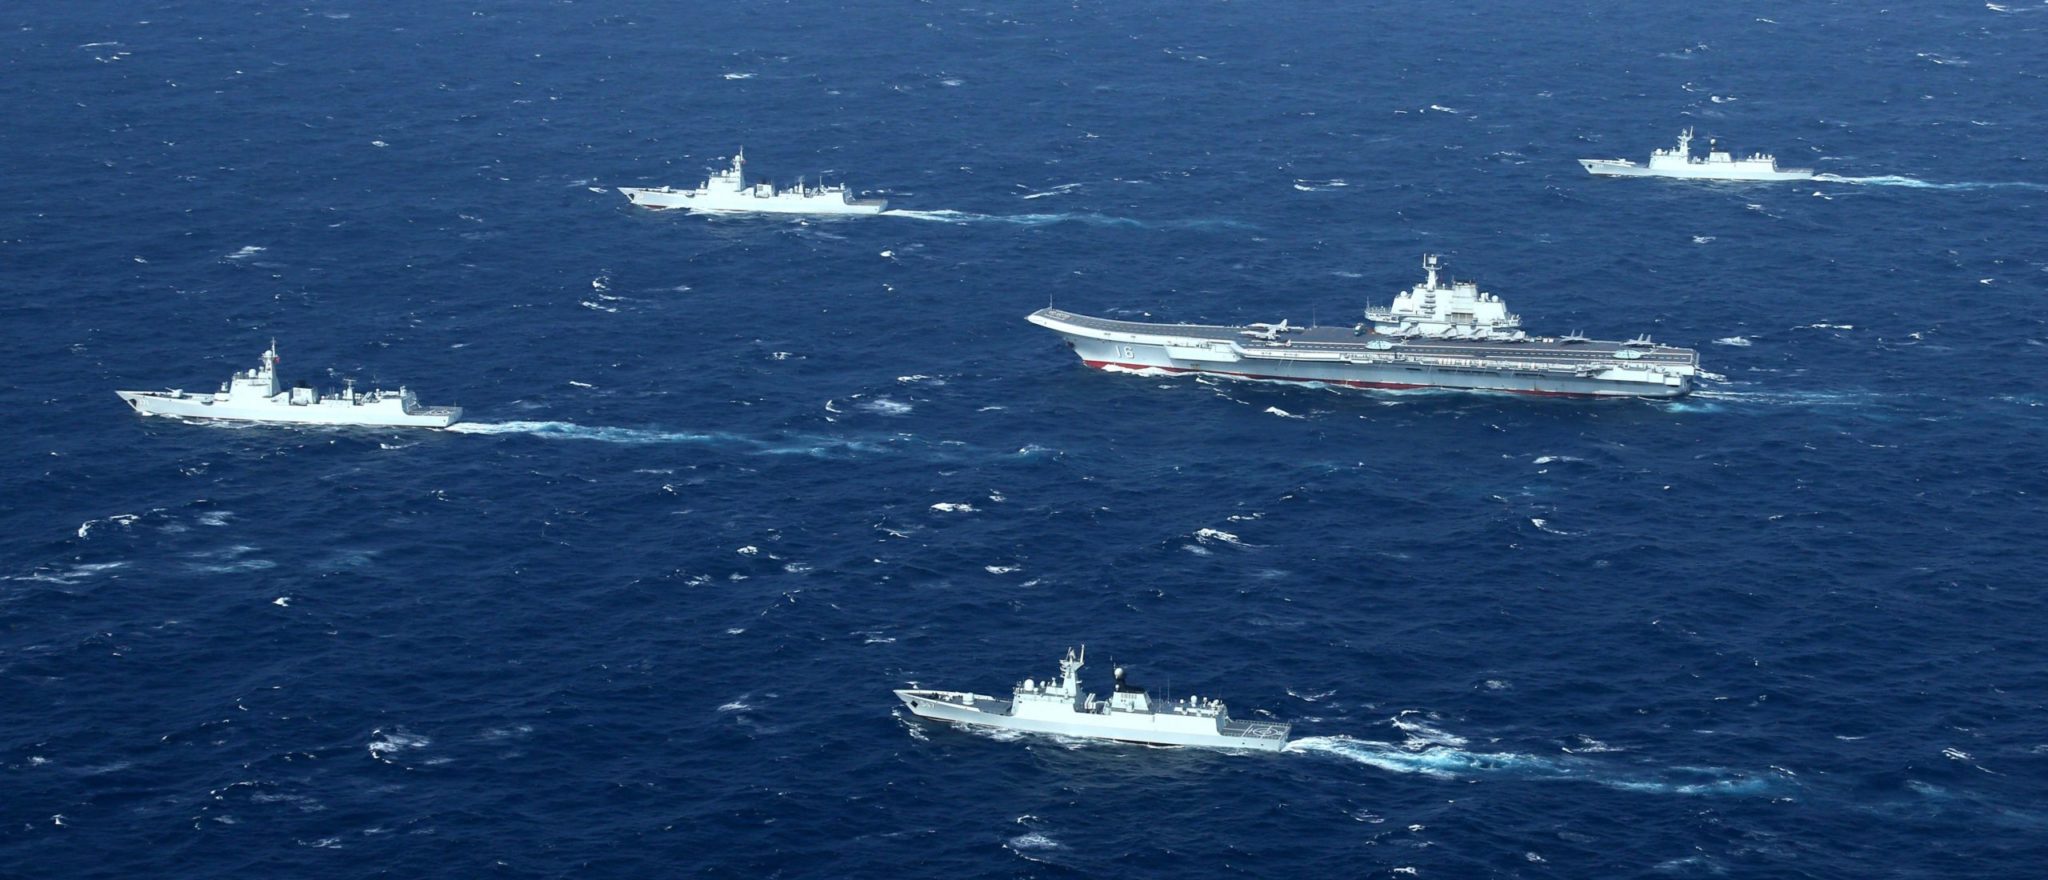 La marine britannique déploiera la plus grande flotte depuis des décennies dans la mer de Chine méridionale